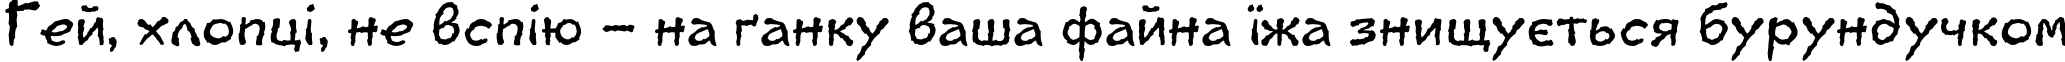 Пример написания шрифтом Jaggy текста на украинском